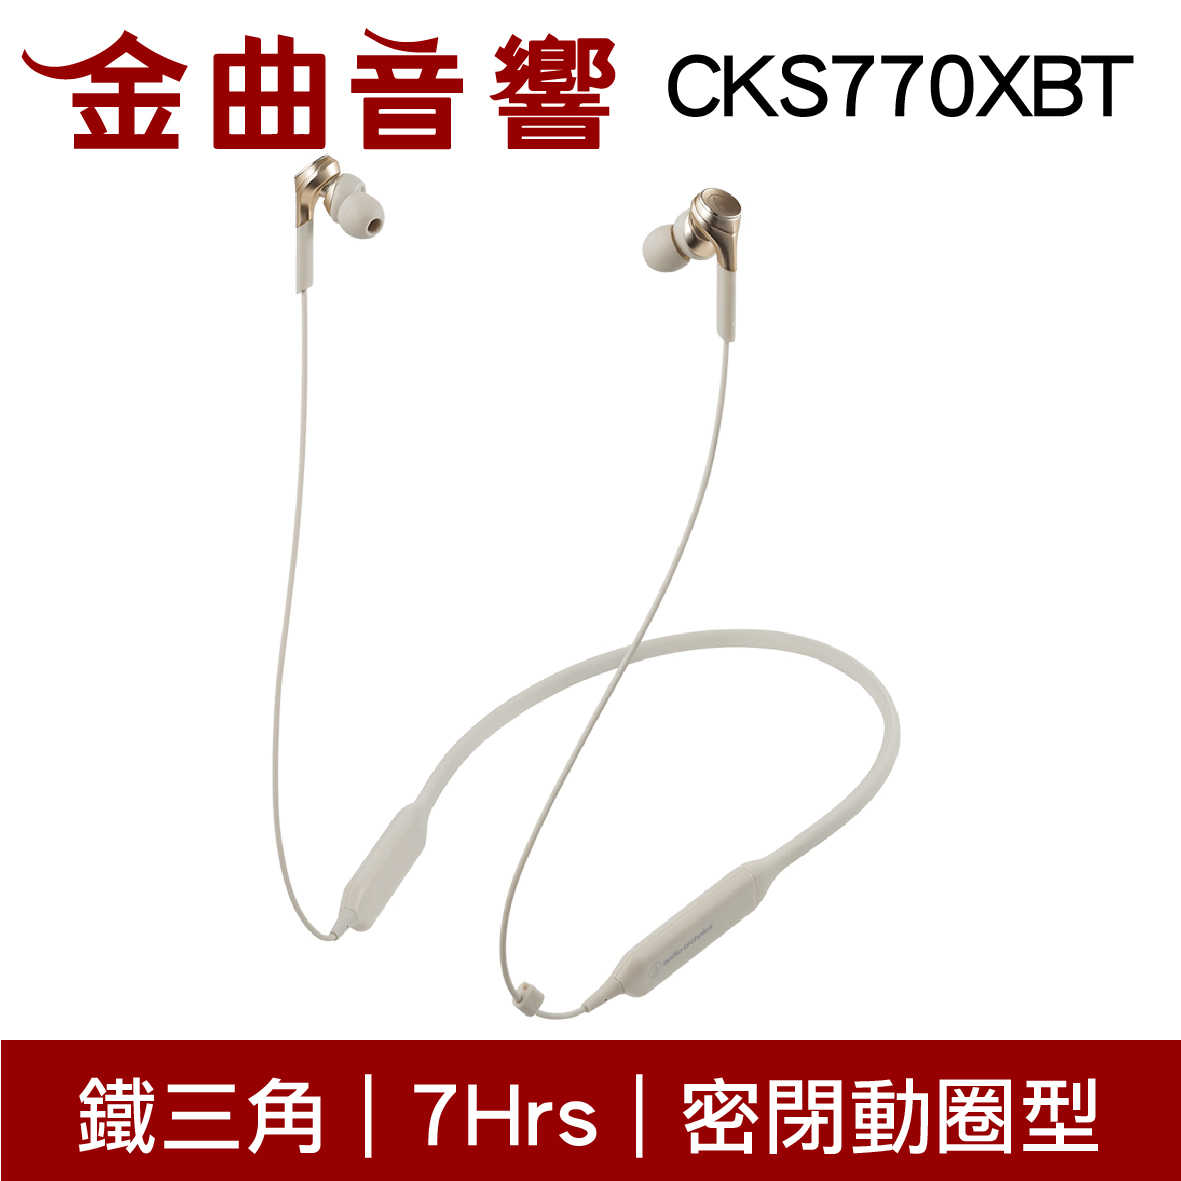 鐵三角 ATH-CKS770XBT 金色 藍牙 耳機 無線 重低音 CKS770XBT | 金曲音響